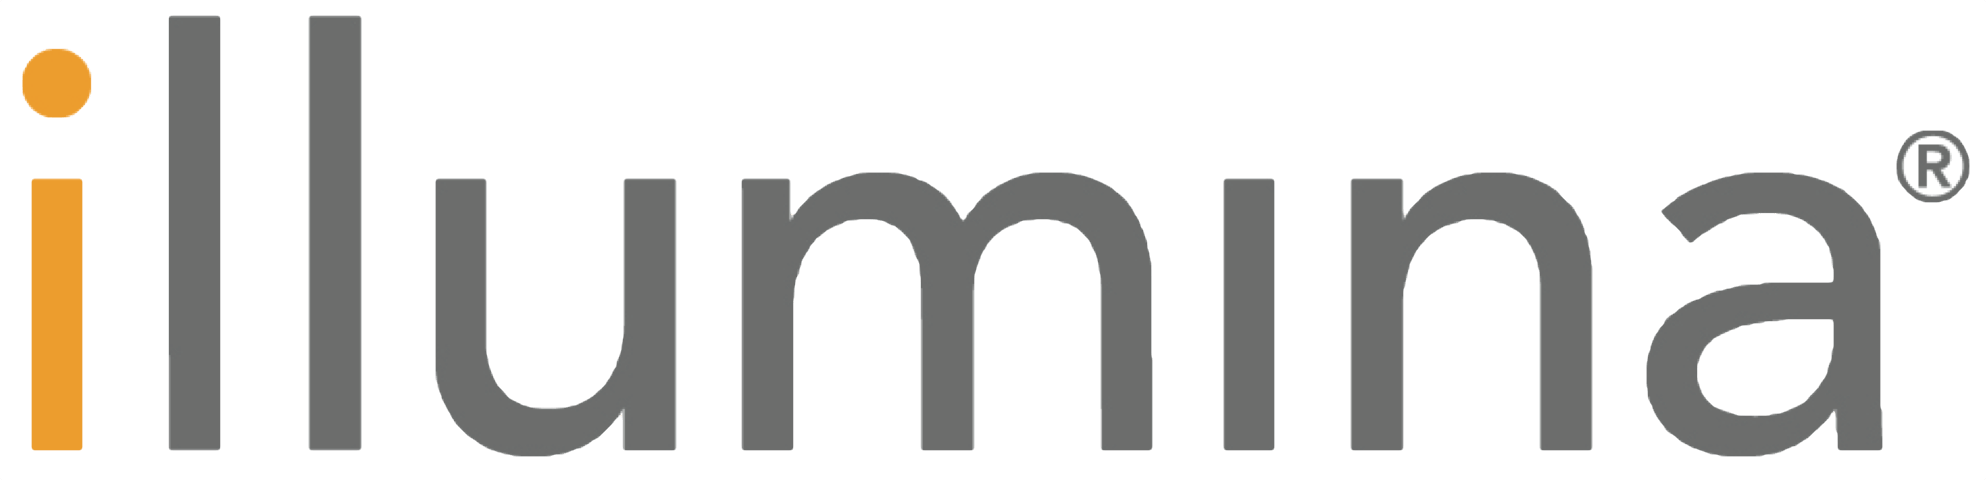 Logotipo illumina